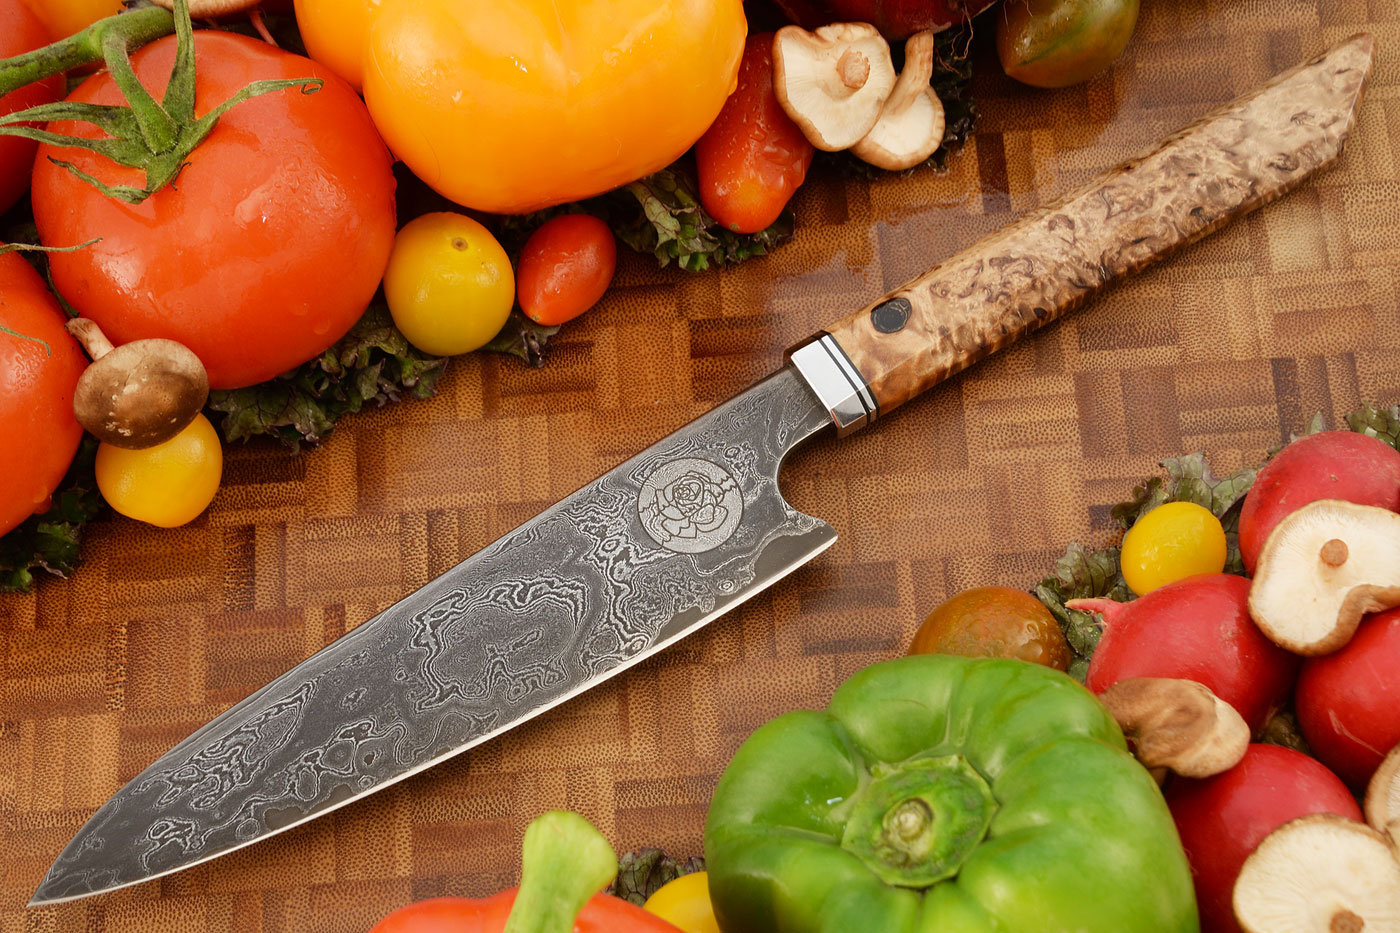 Damascus San Mai Chef's Knife (7 in.) with Masur Birch